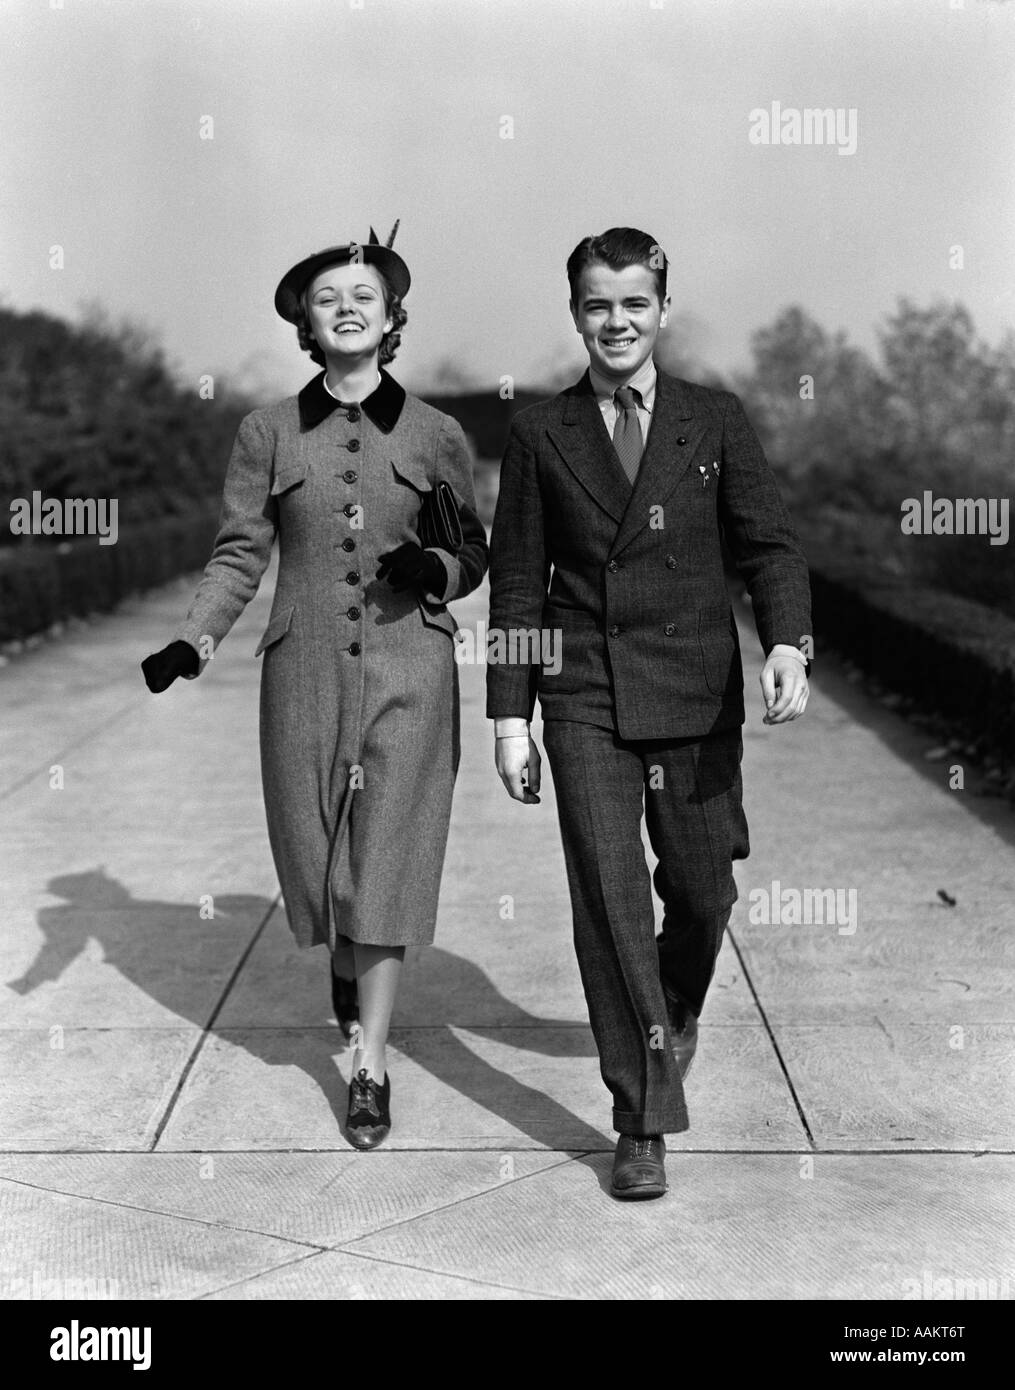 1940 YOUNG SMILING WOMAN WALKING ON SIDEWALK SMILING HABILLÉ DES MEILLEURS DIMANCHE Banque D'Images